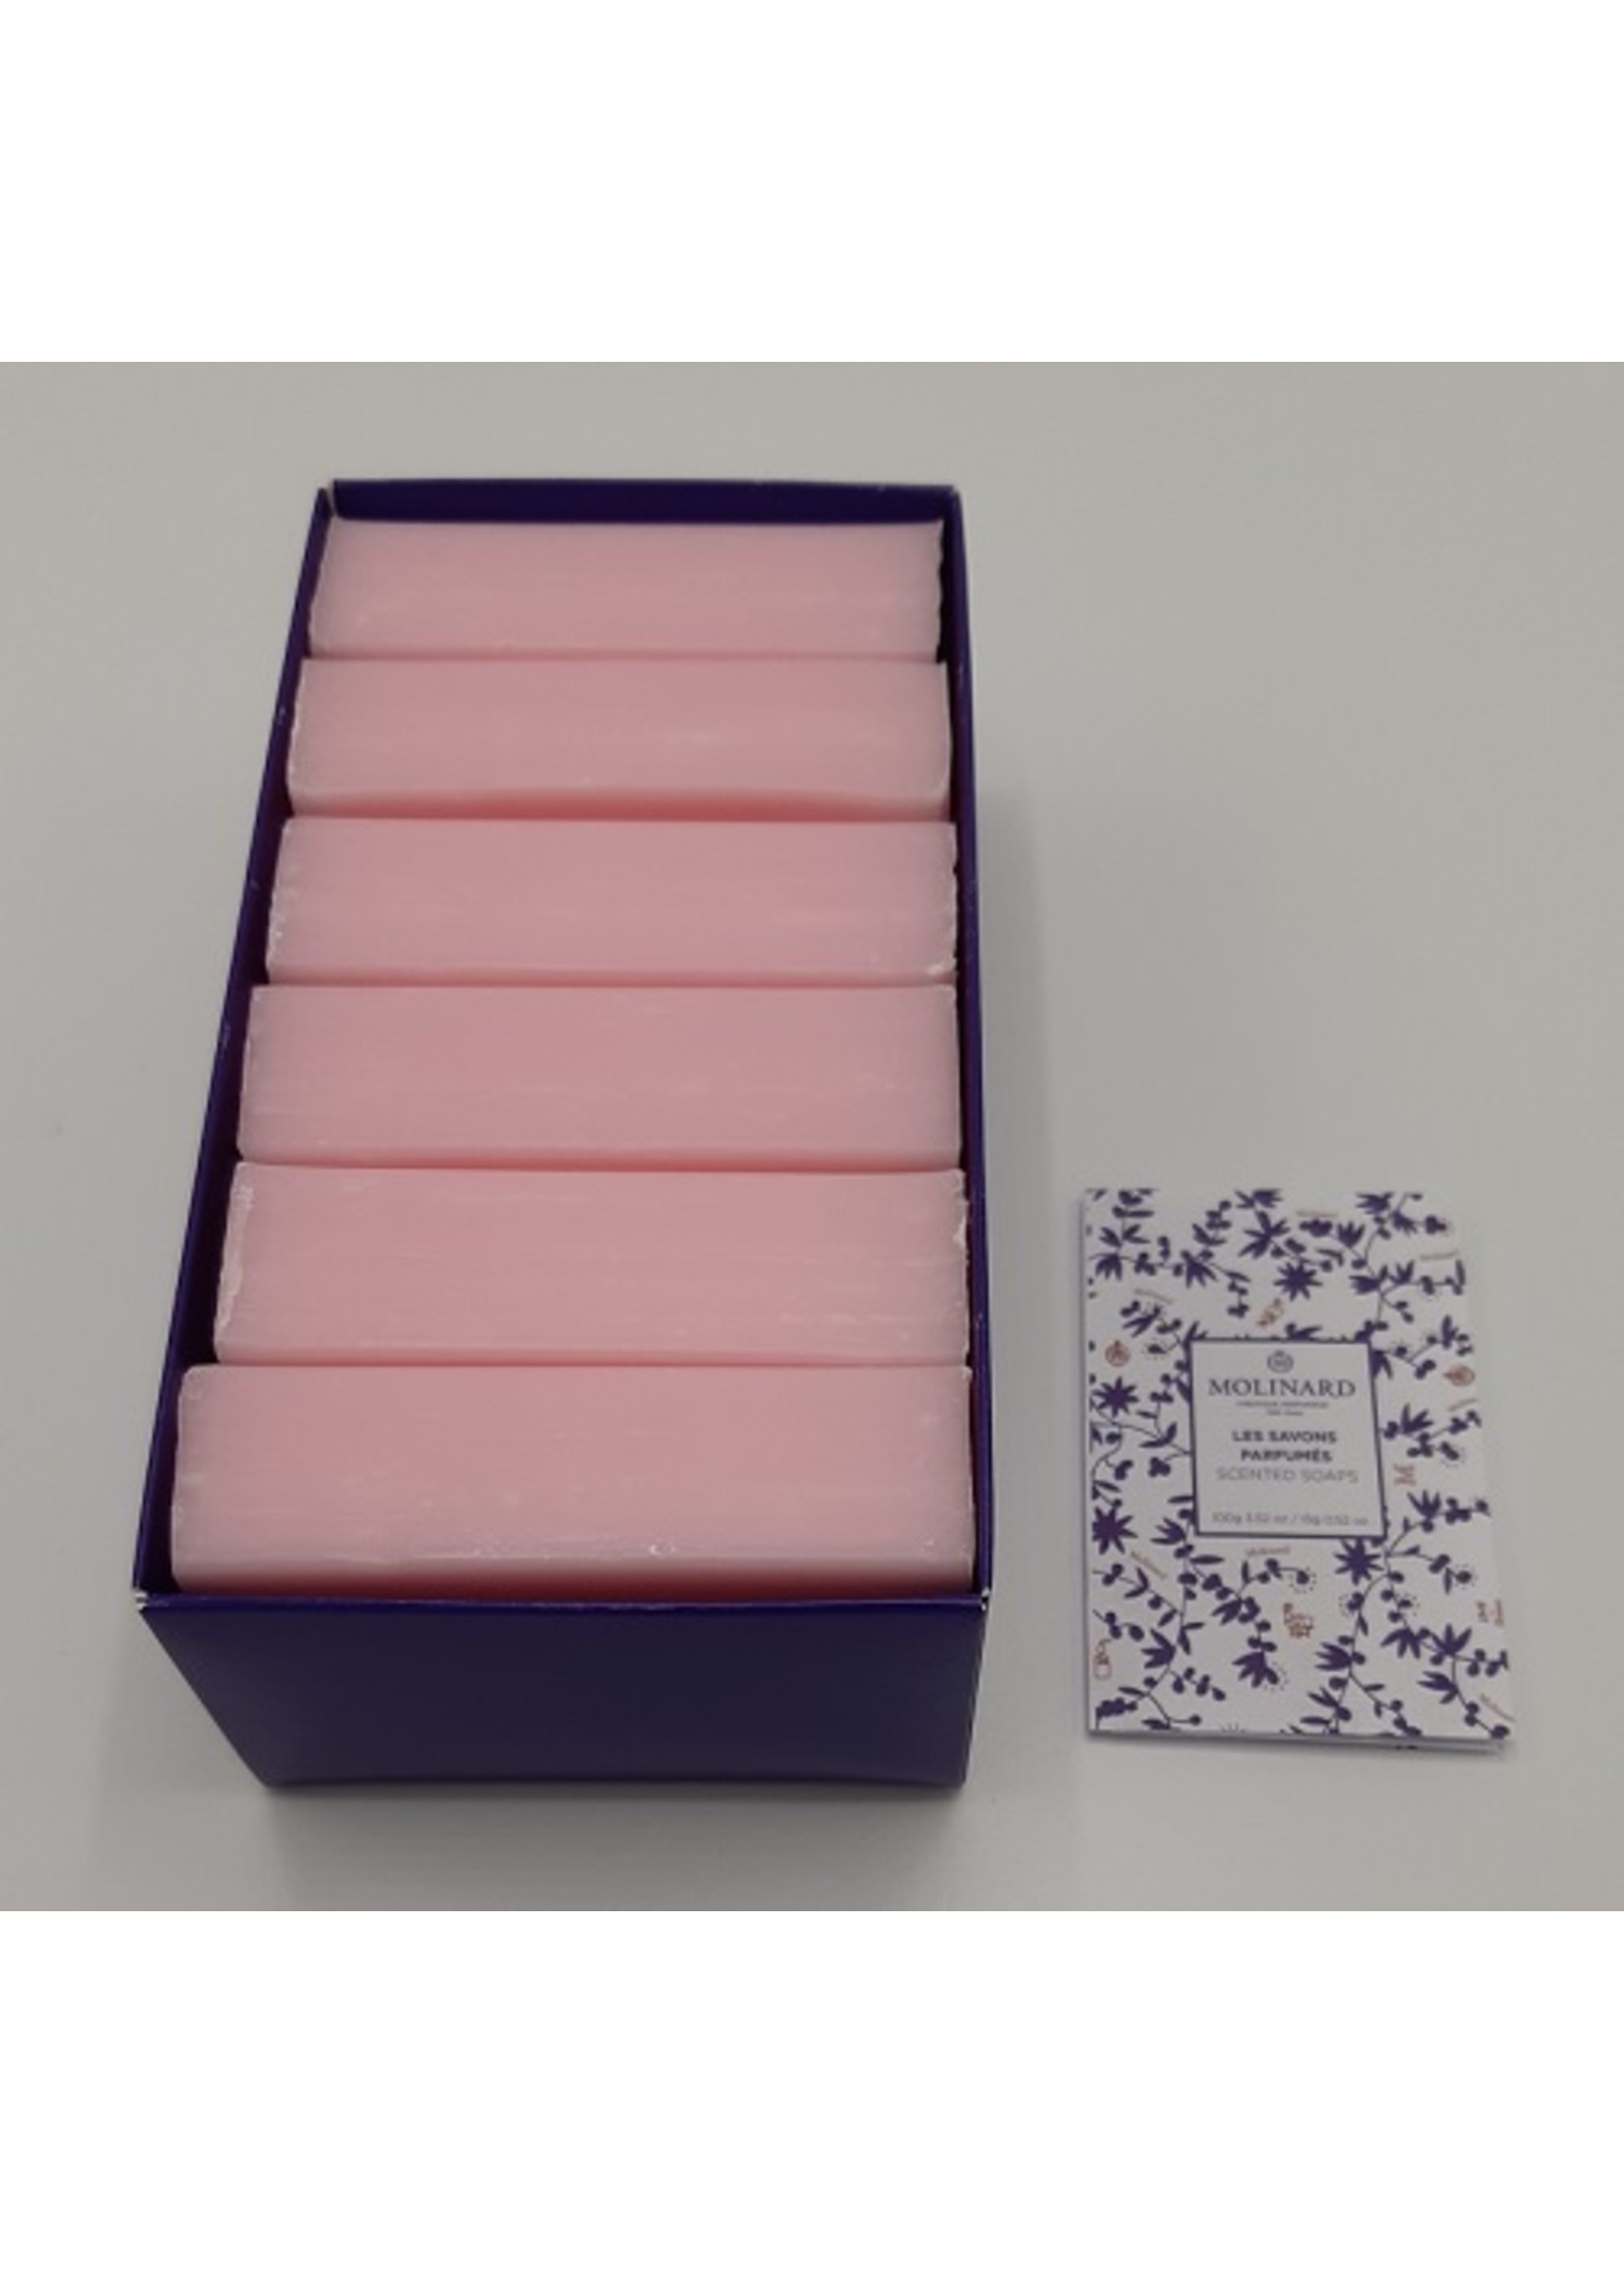 Molinard Gift Box Rose - Soaps by Molinard